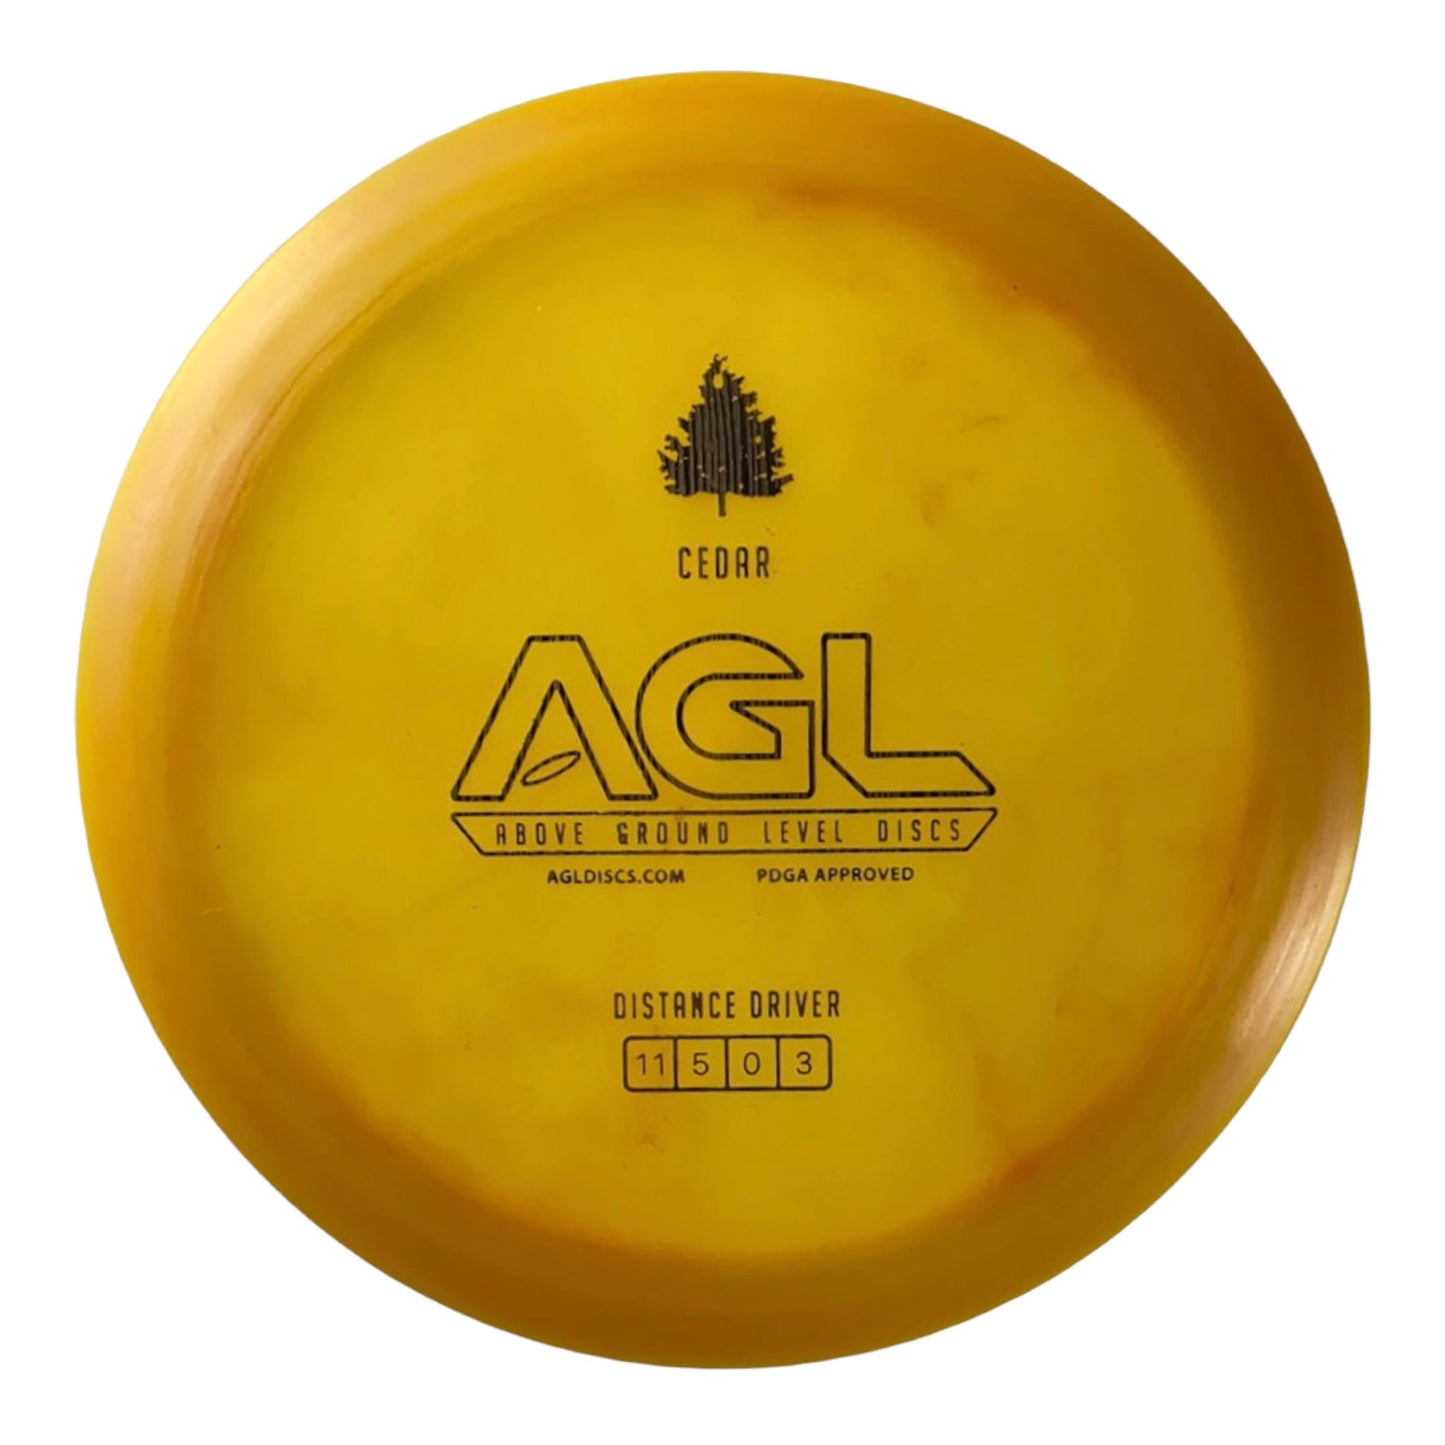 Above Ground Level Cedar | Alpine | Orange/Gold 171g Disc Golf